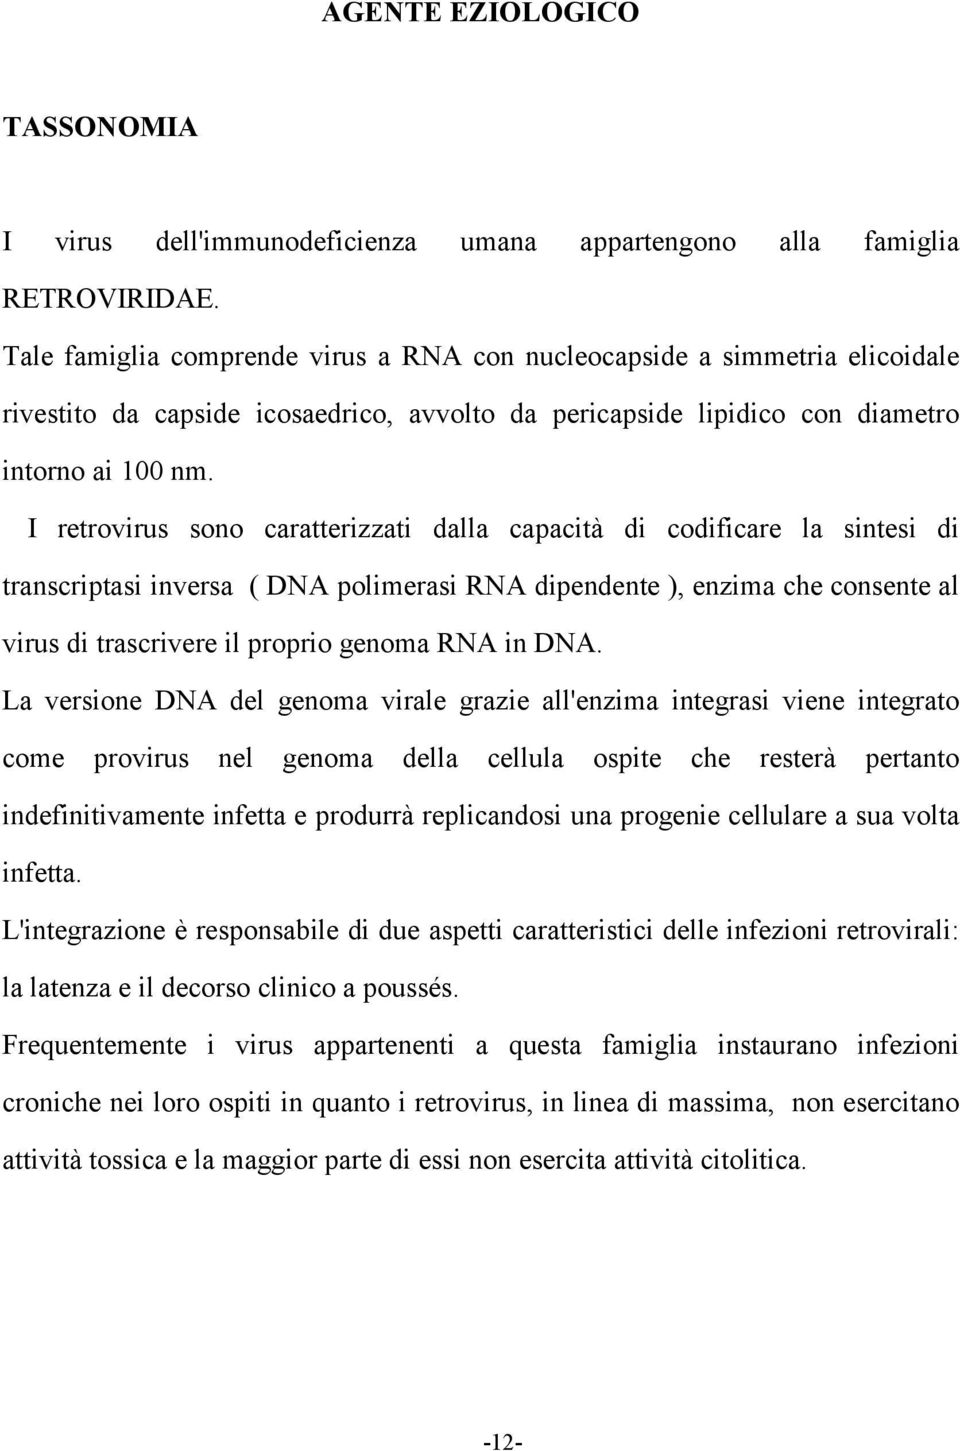 I retrovirus sono caratterizzati dalla capacità di codificare la sintesi di transcriptasi inversa ( DNA polimerasi RNA dipendente ), enzima che consente al virus di trascrivere il proprio genoma RNA